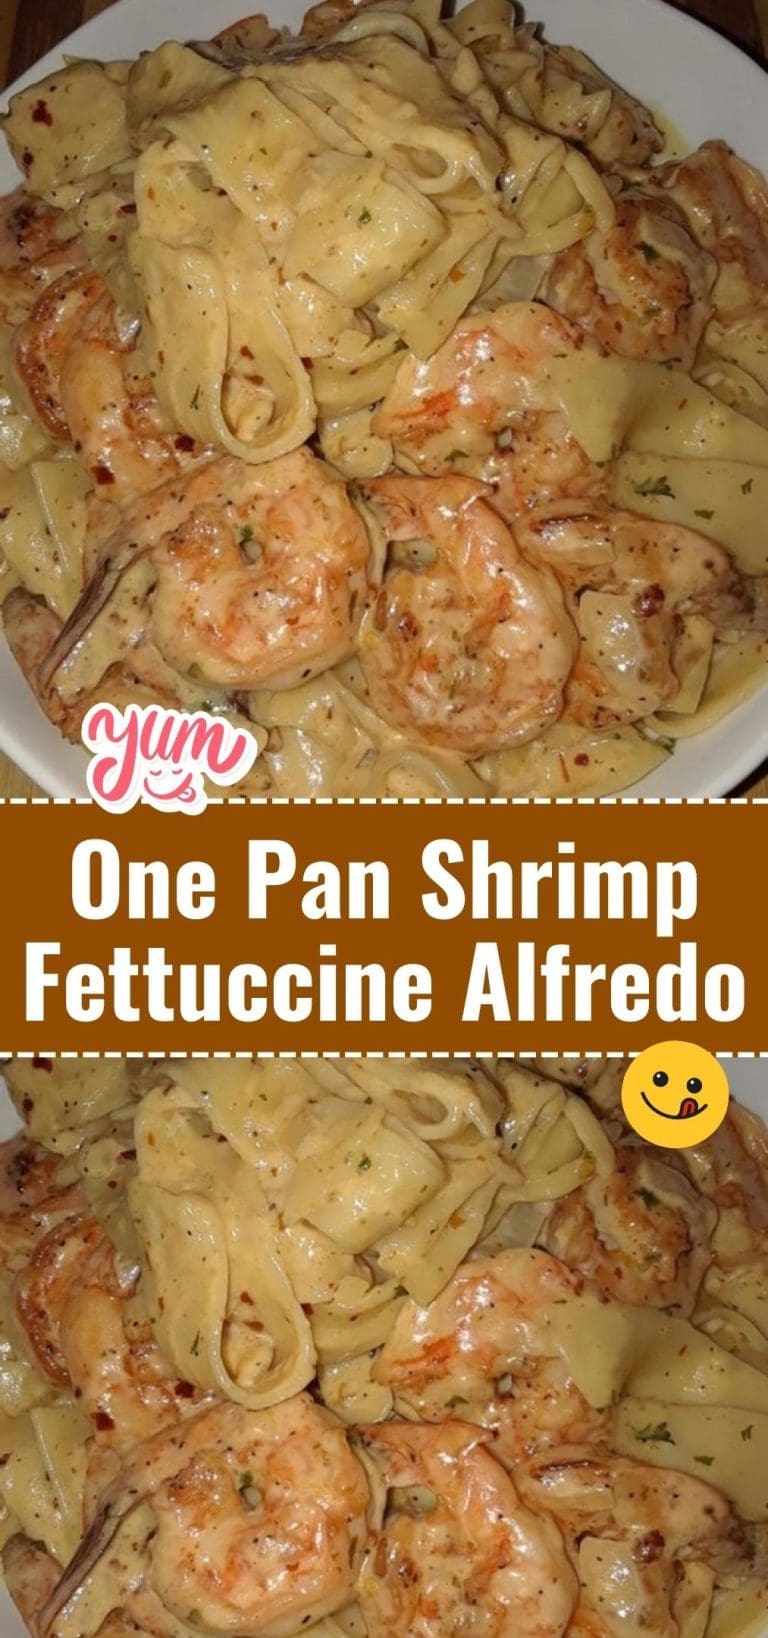 One Pan Shrimp Fettuccine Alfredo